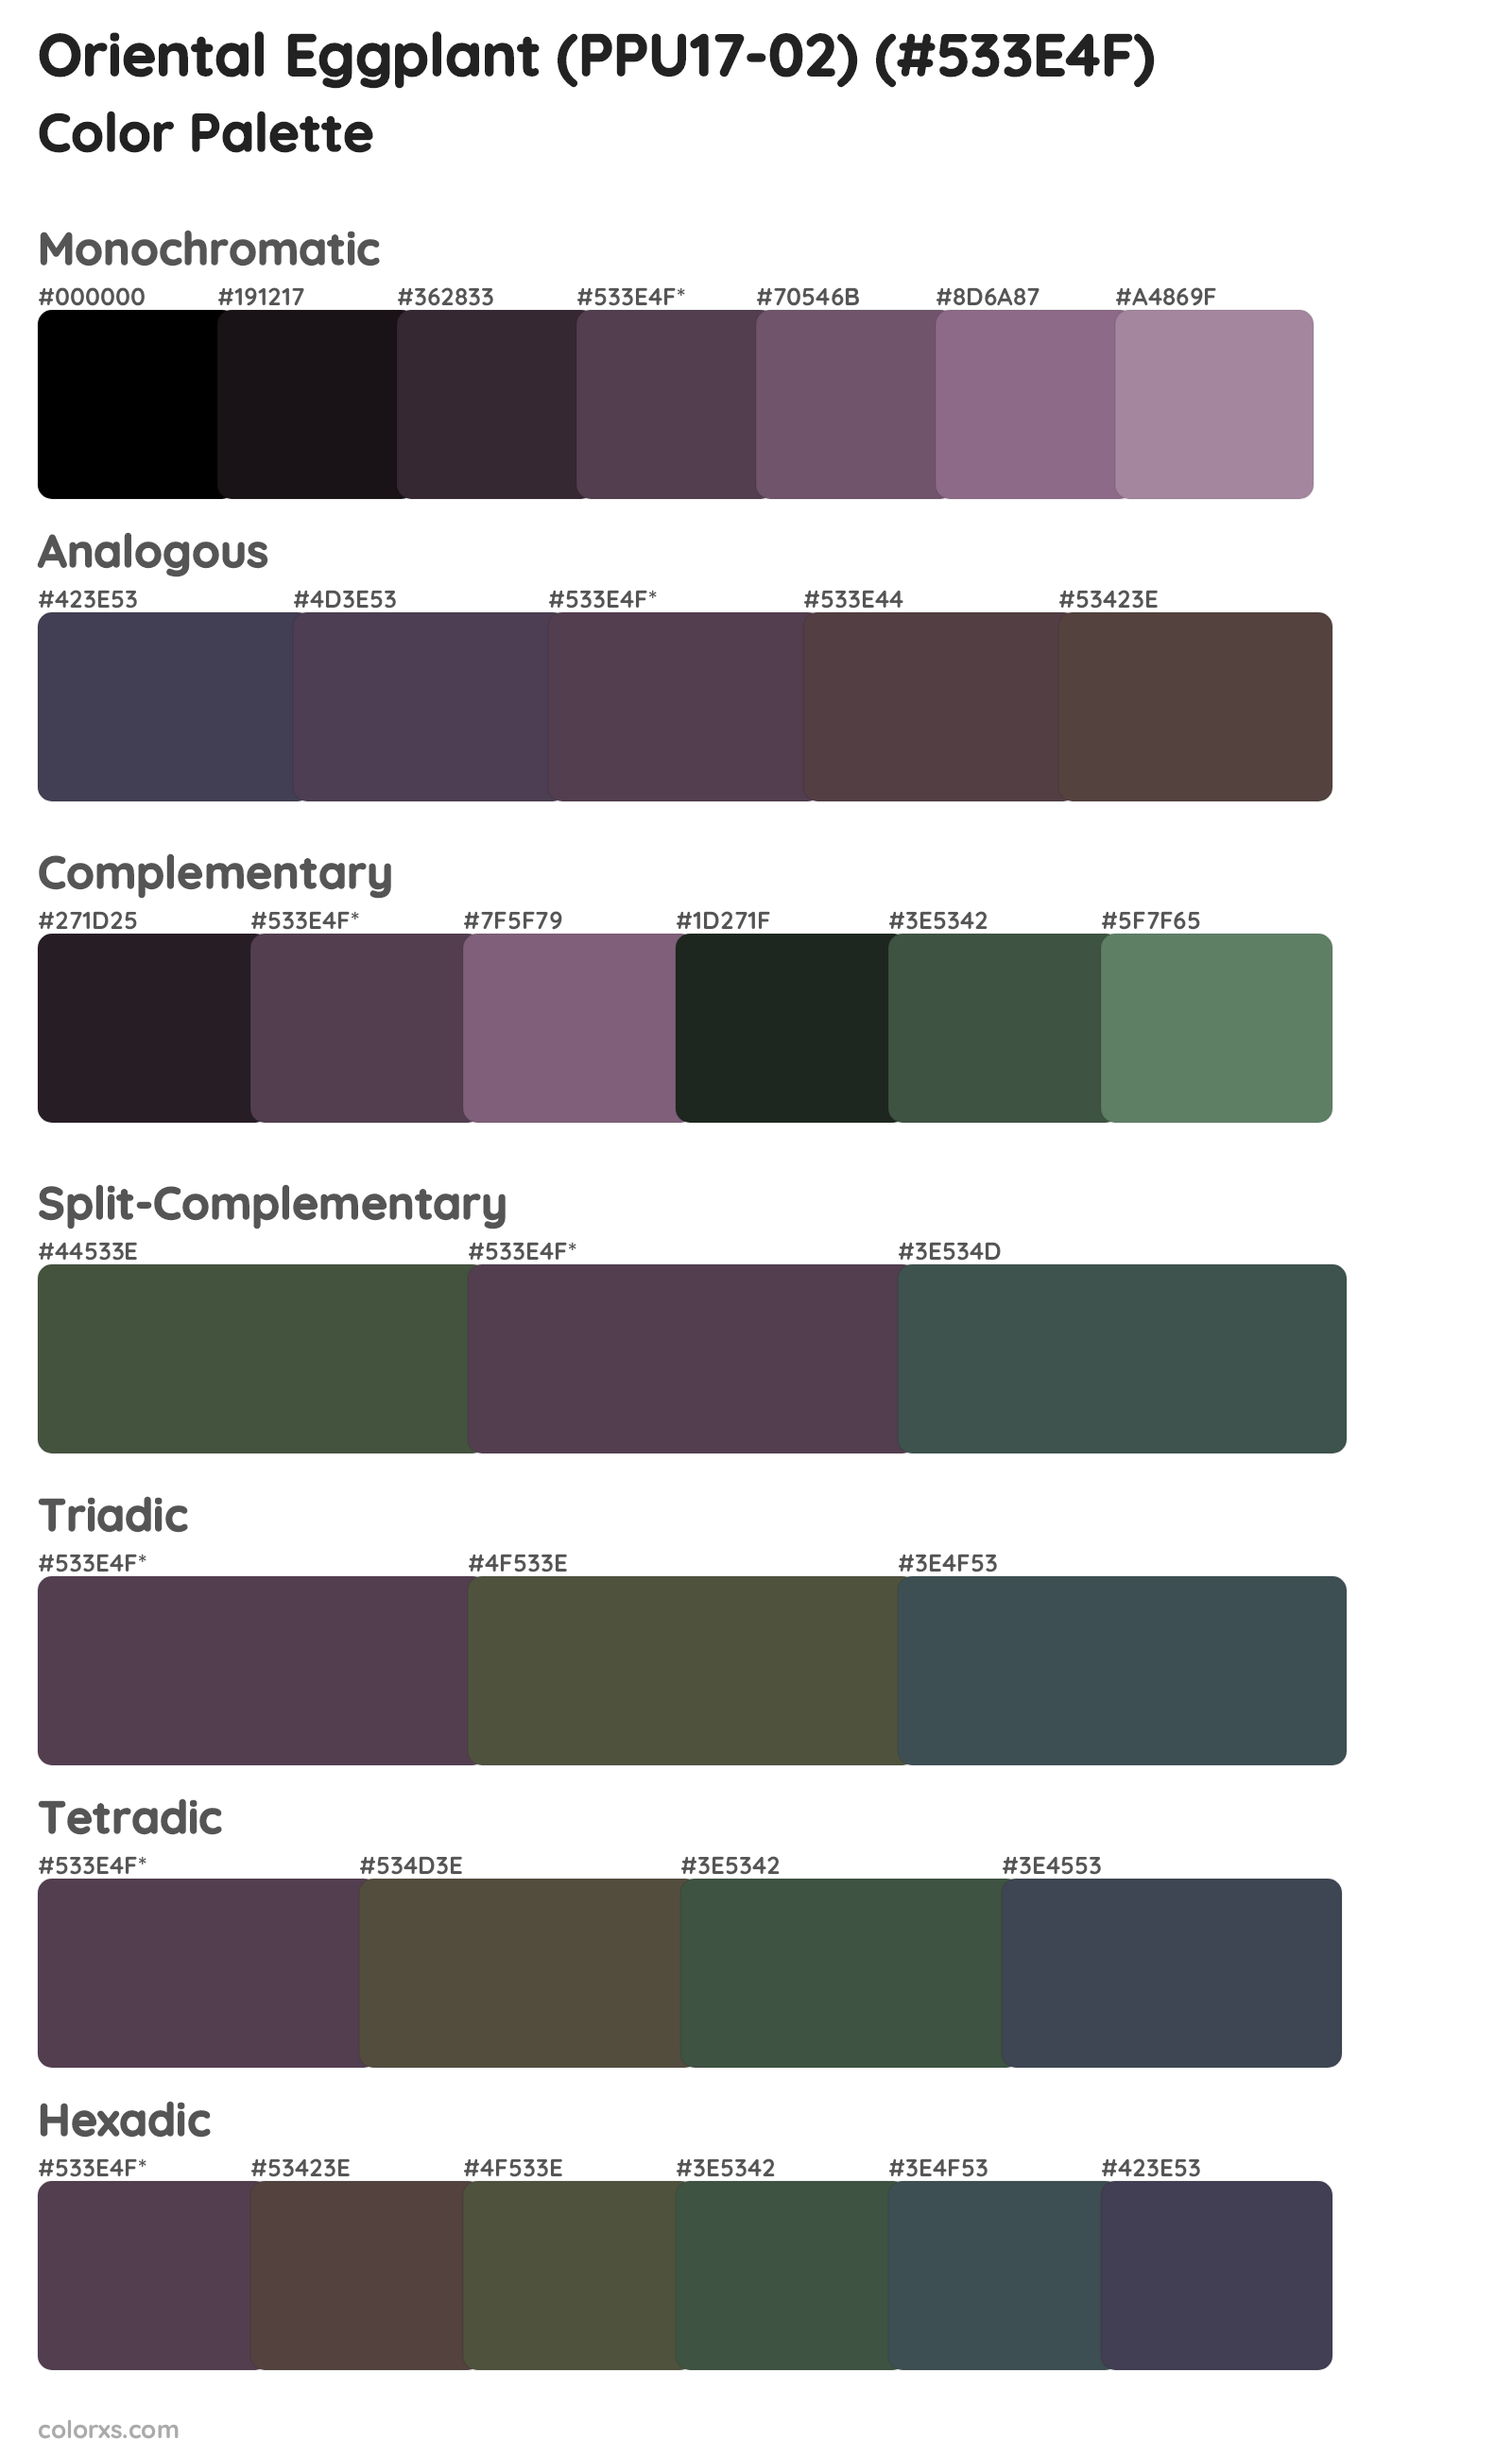 Oriental Eggplant (PPU17-02) Color Scheme Palettes